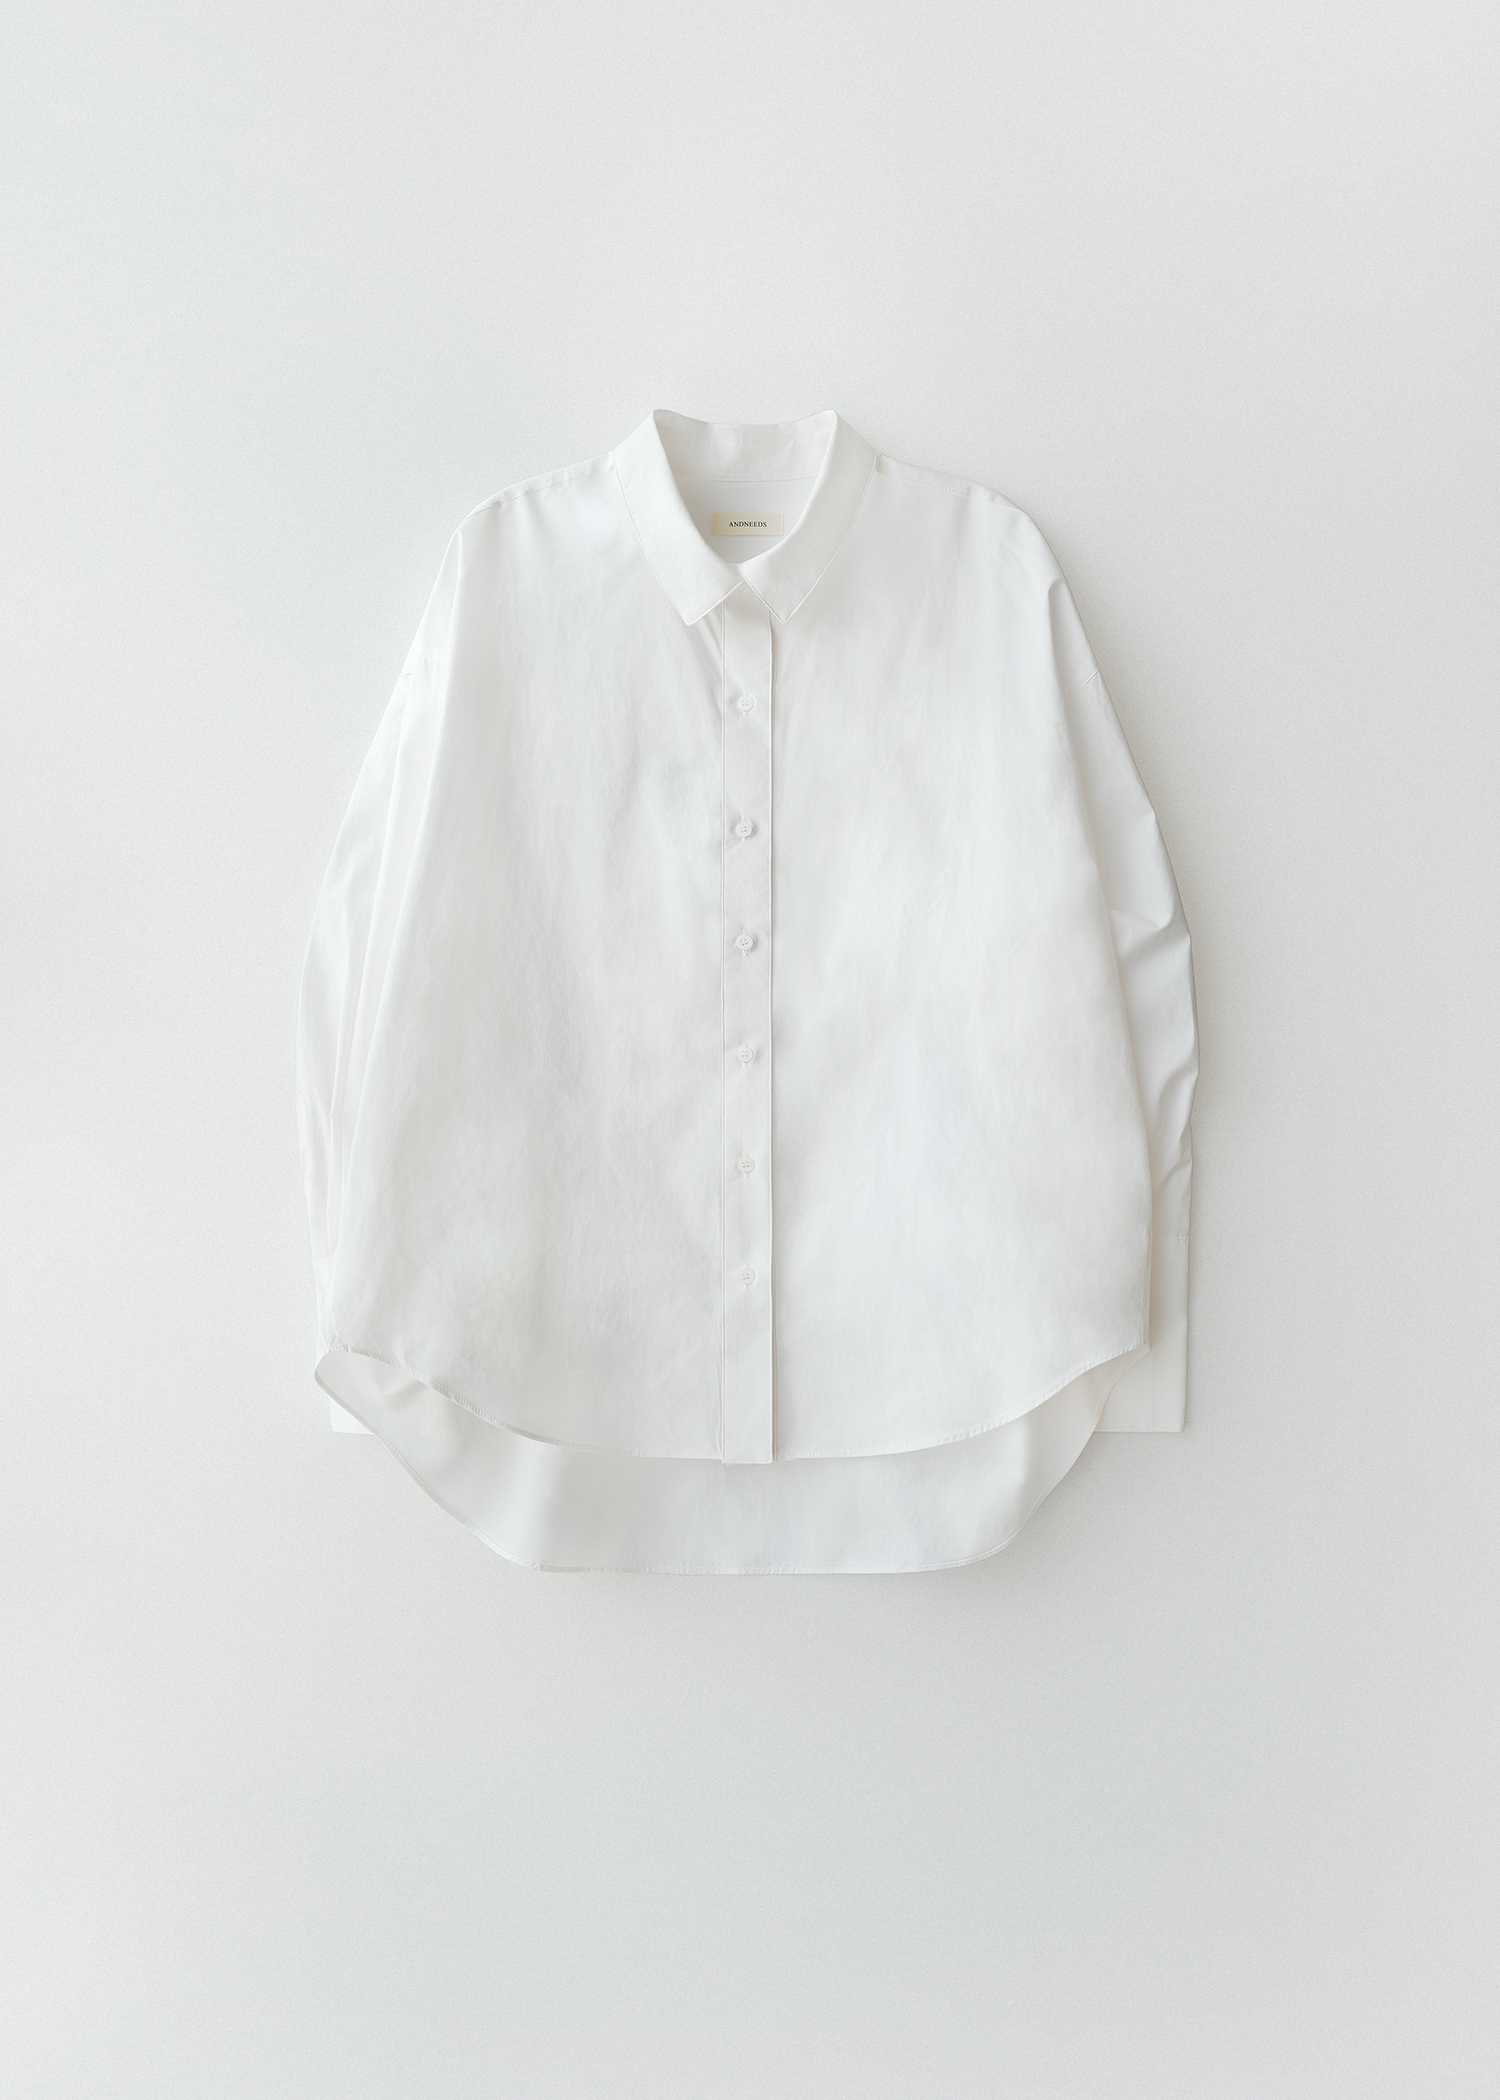 [4/24 순차발송] Loose shirt (white)